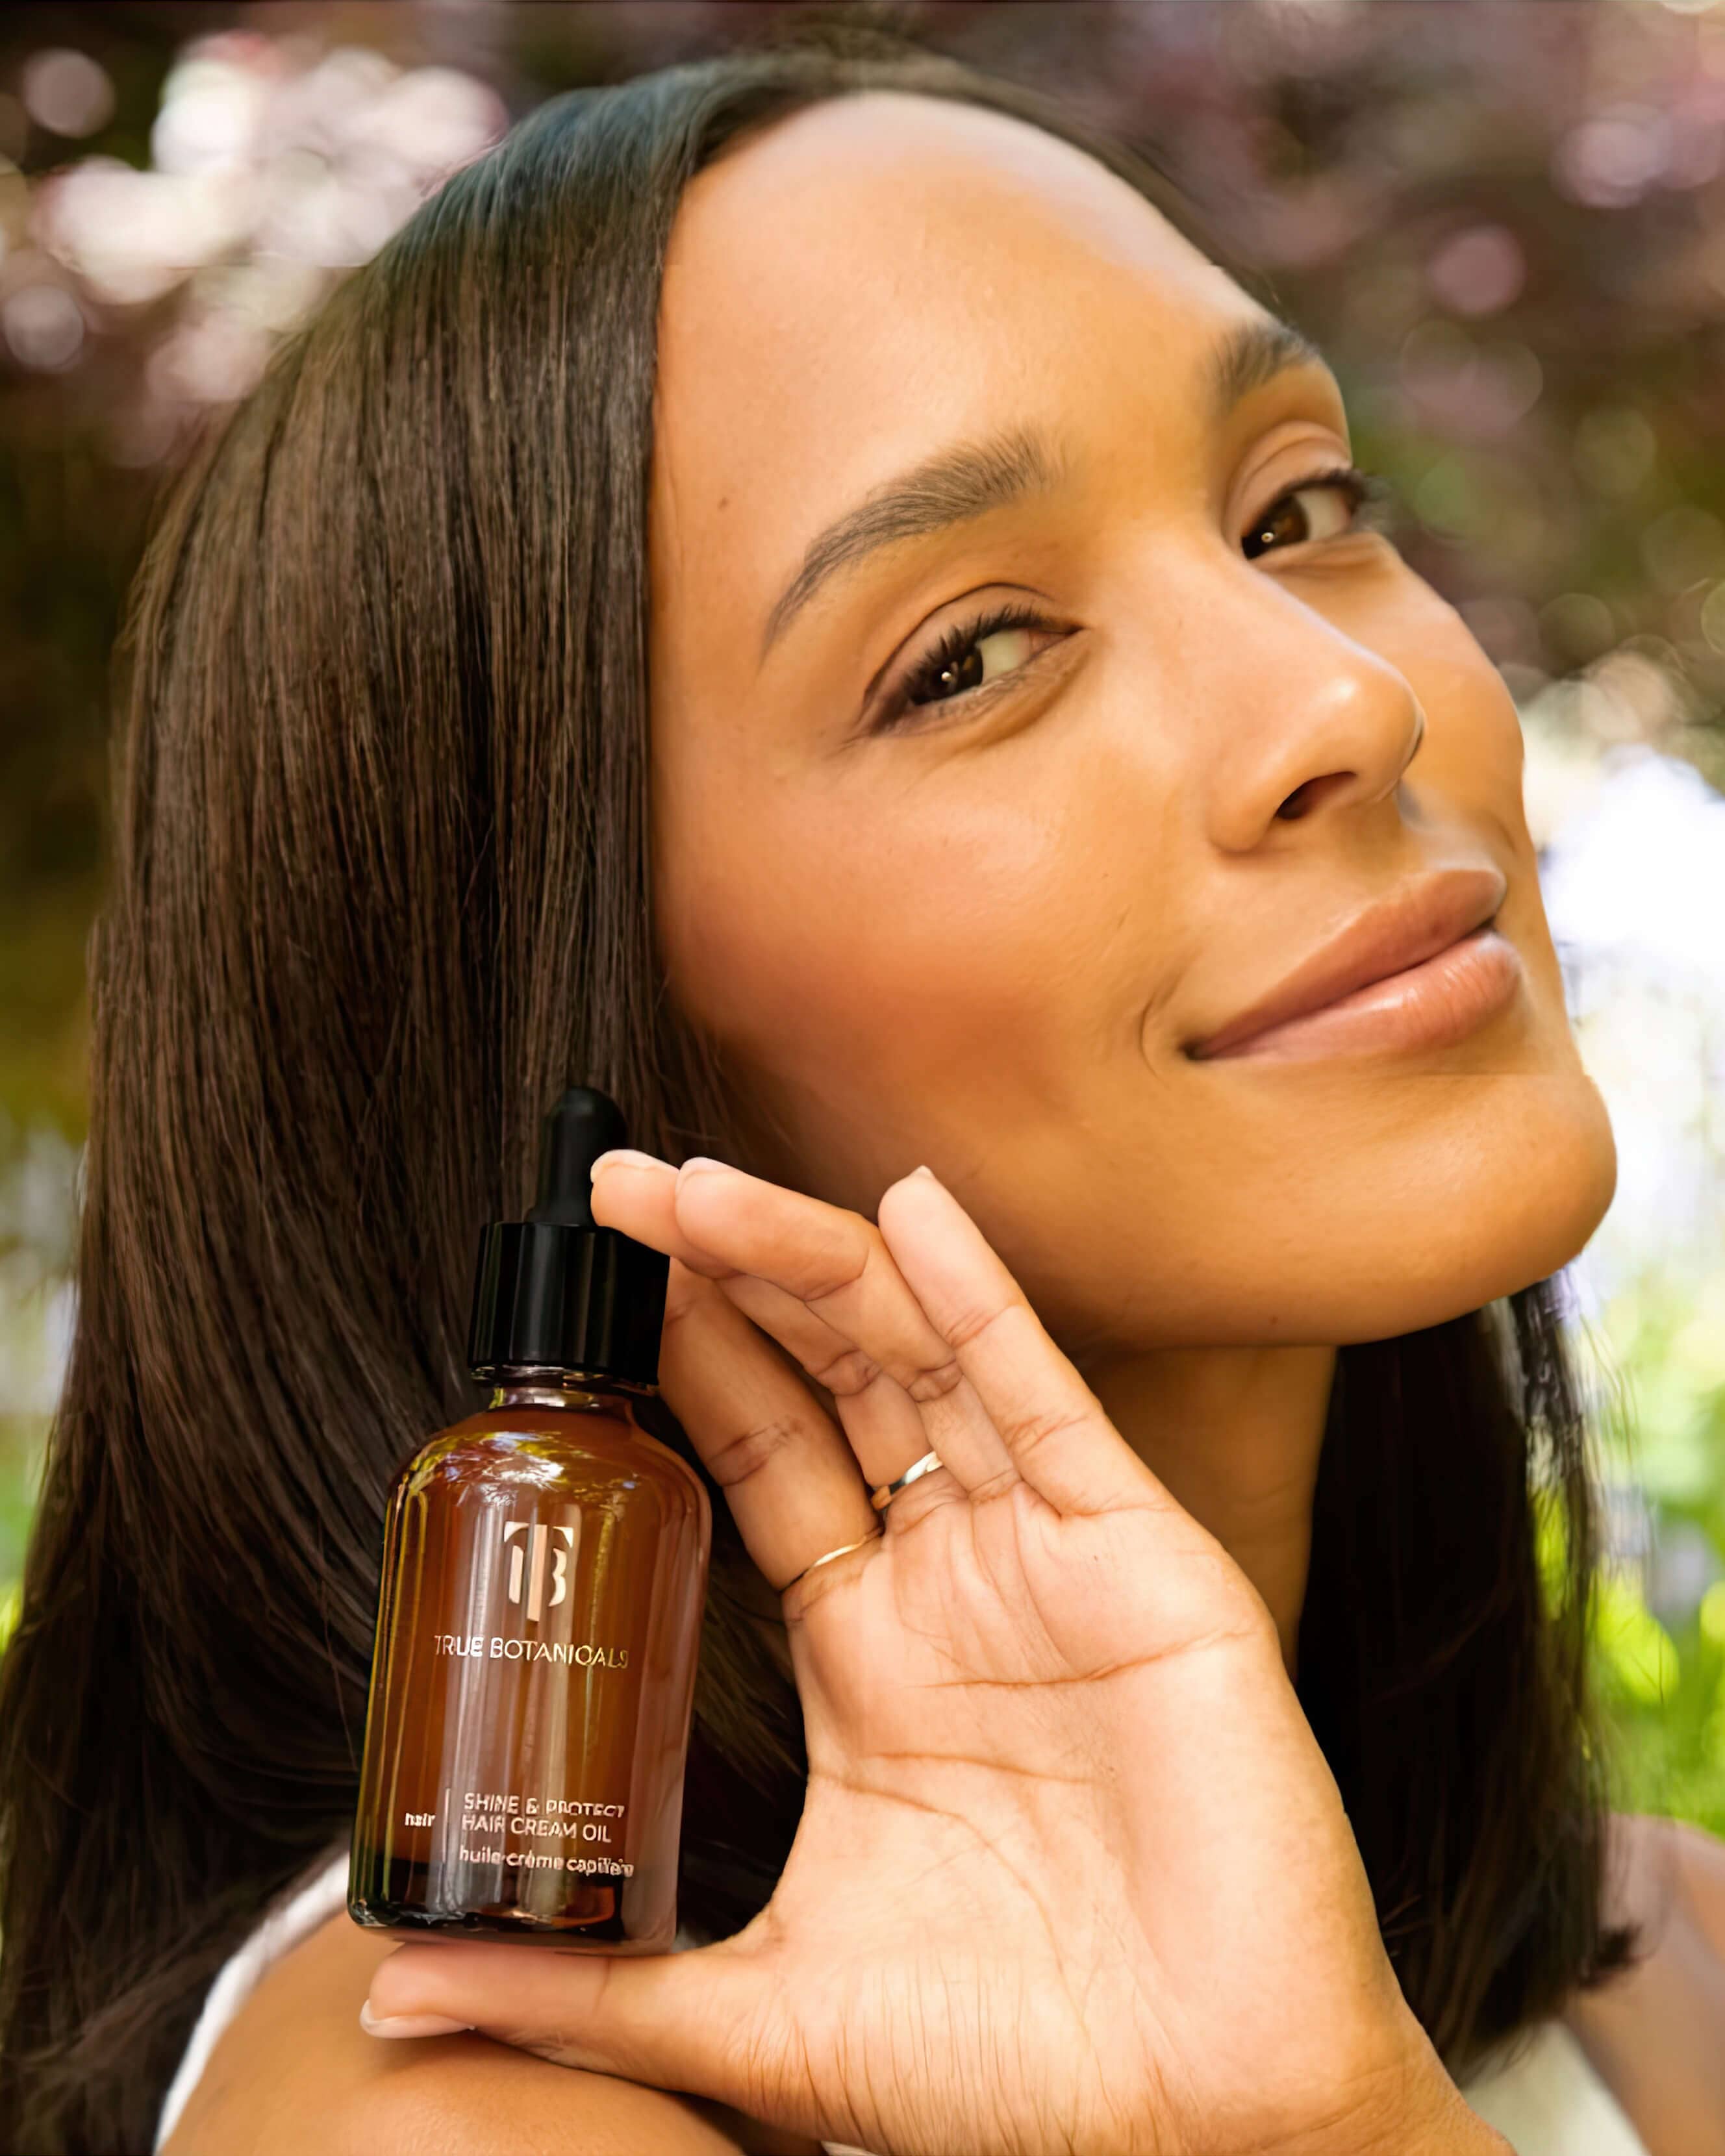 Shine & Protect Hair Cream Oil